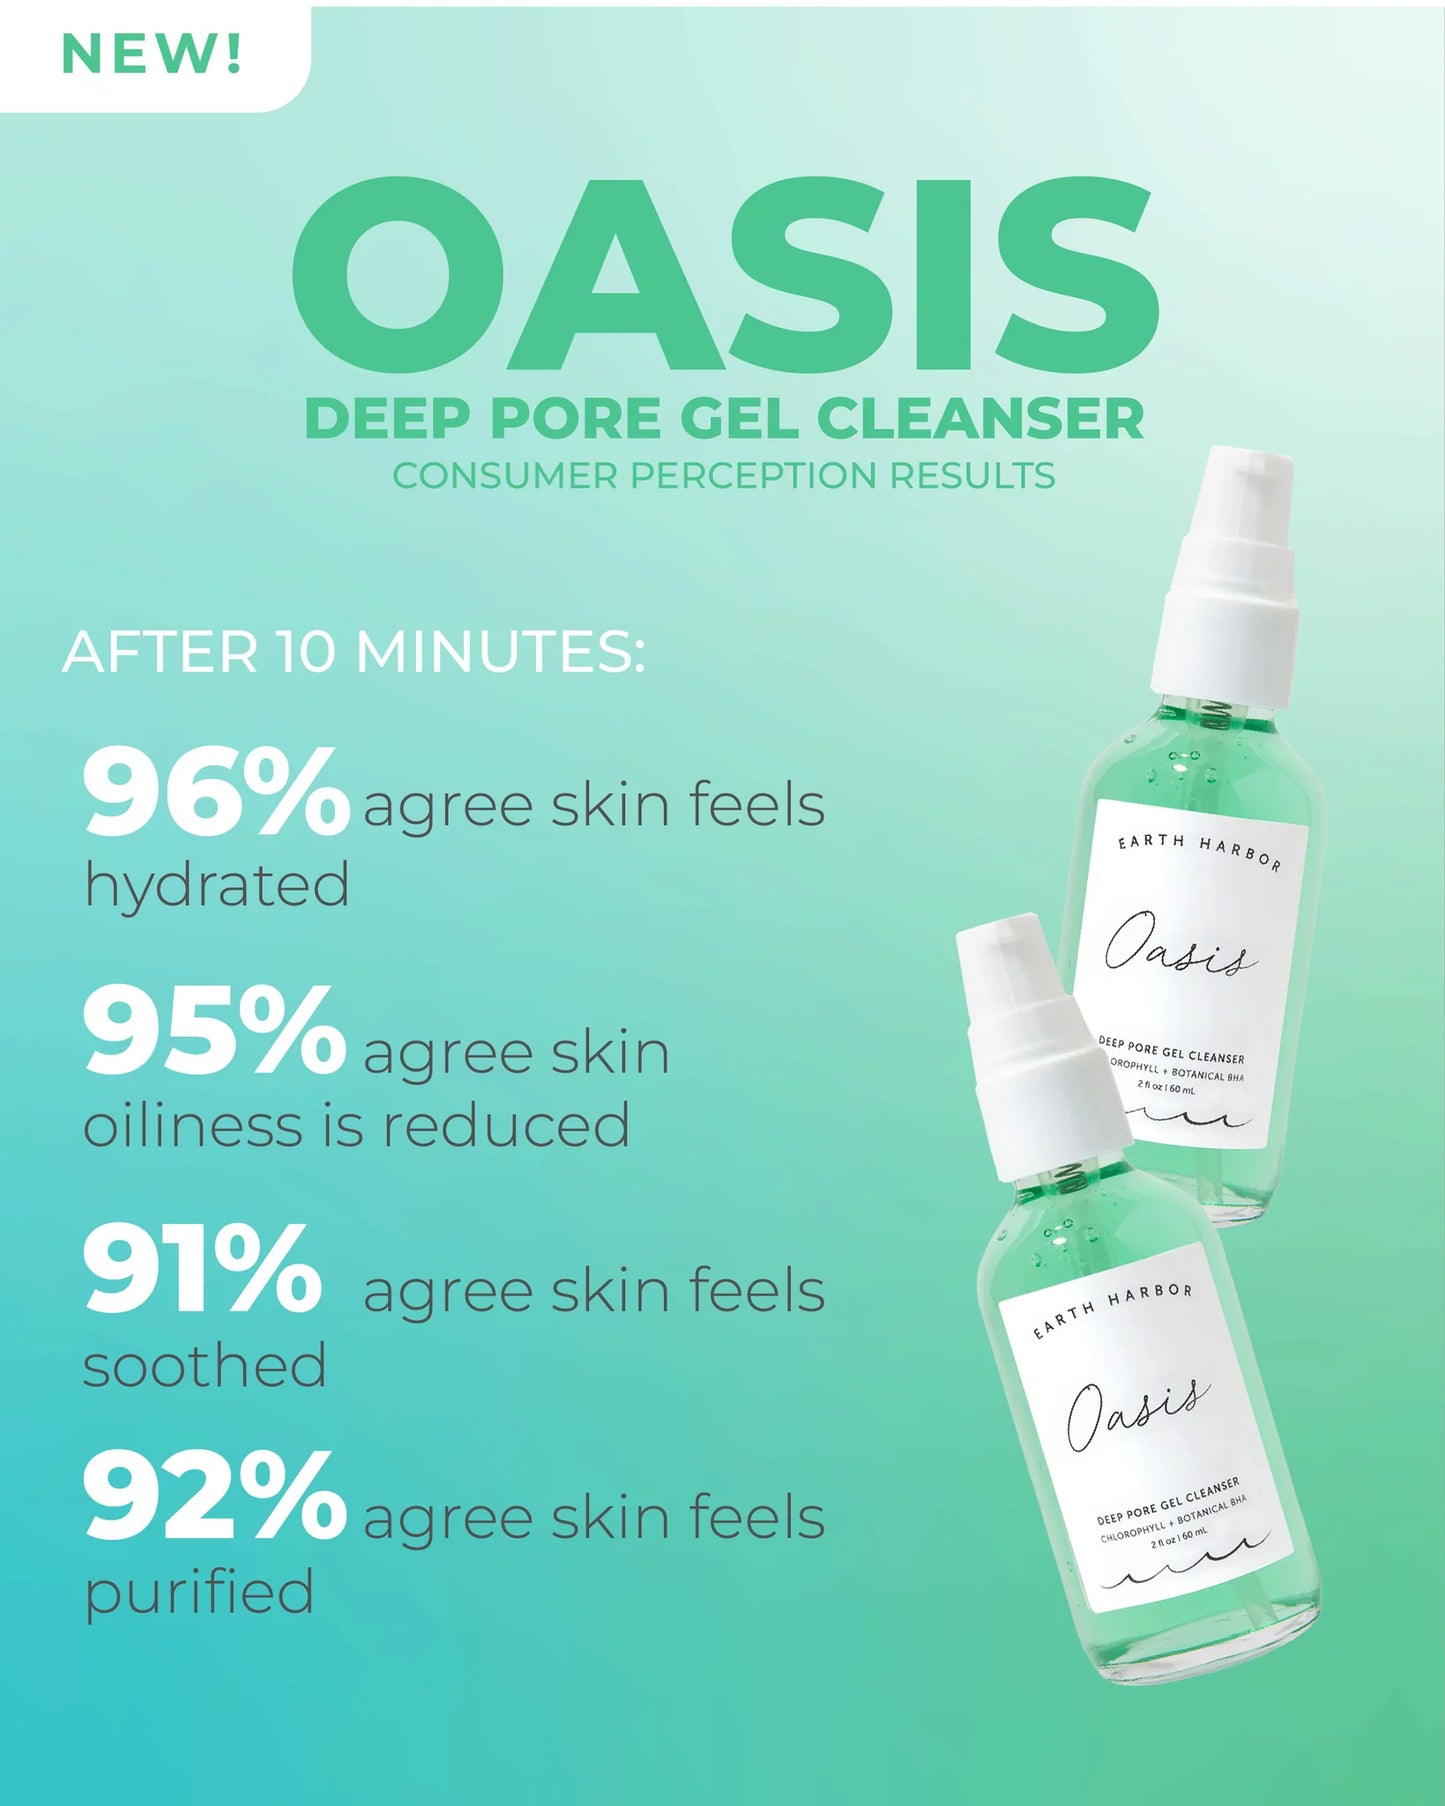 Oasis Deep Pore Gel Cleanser